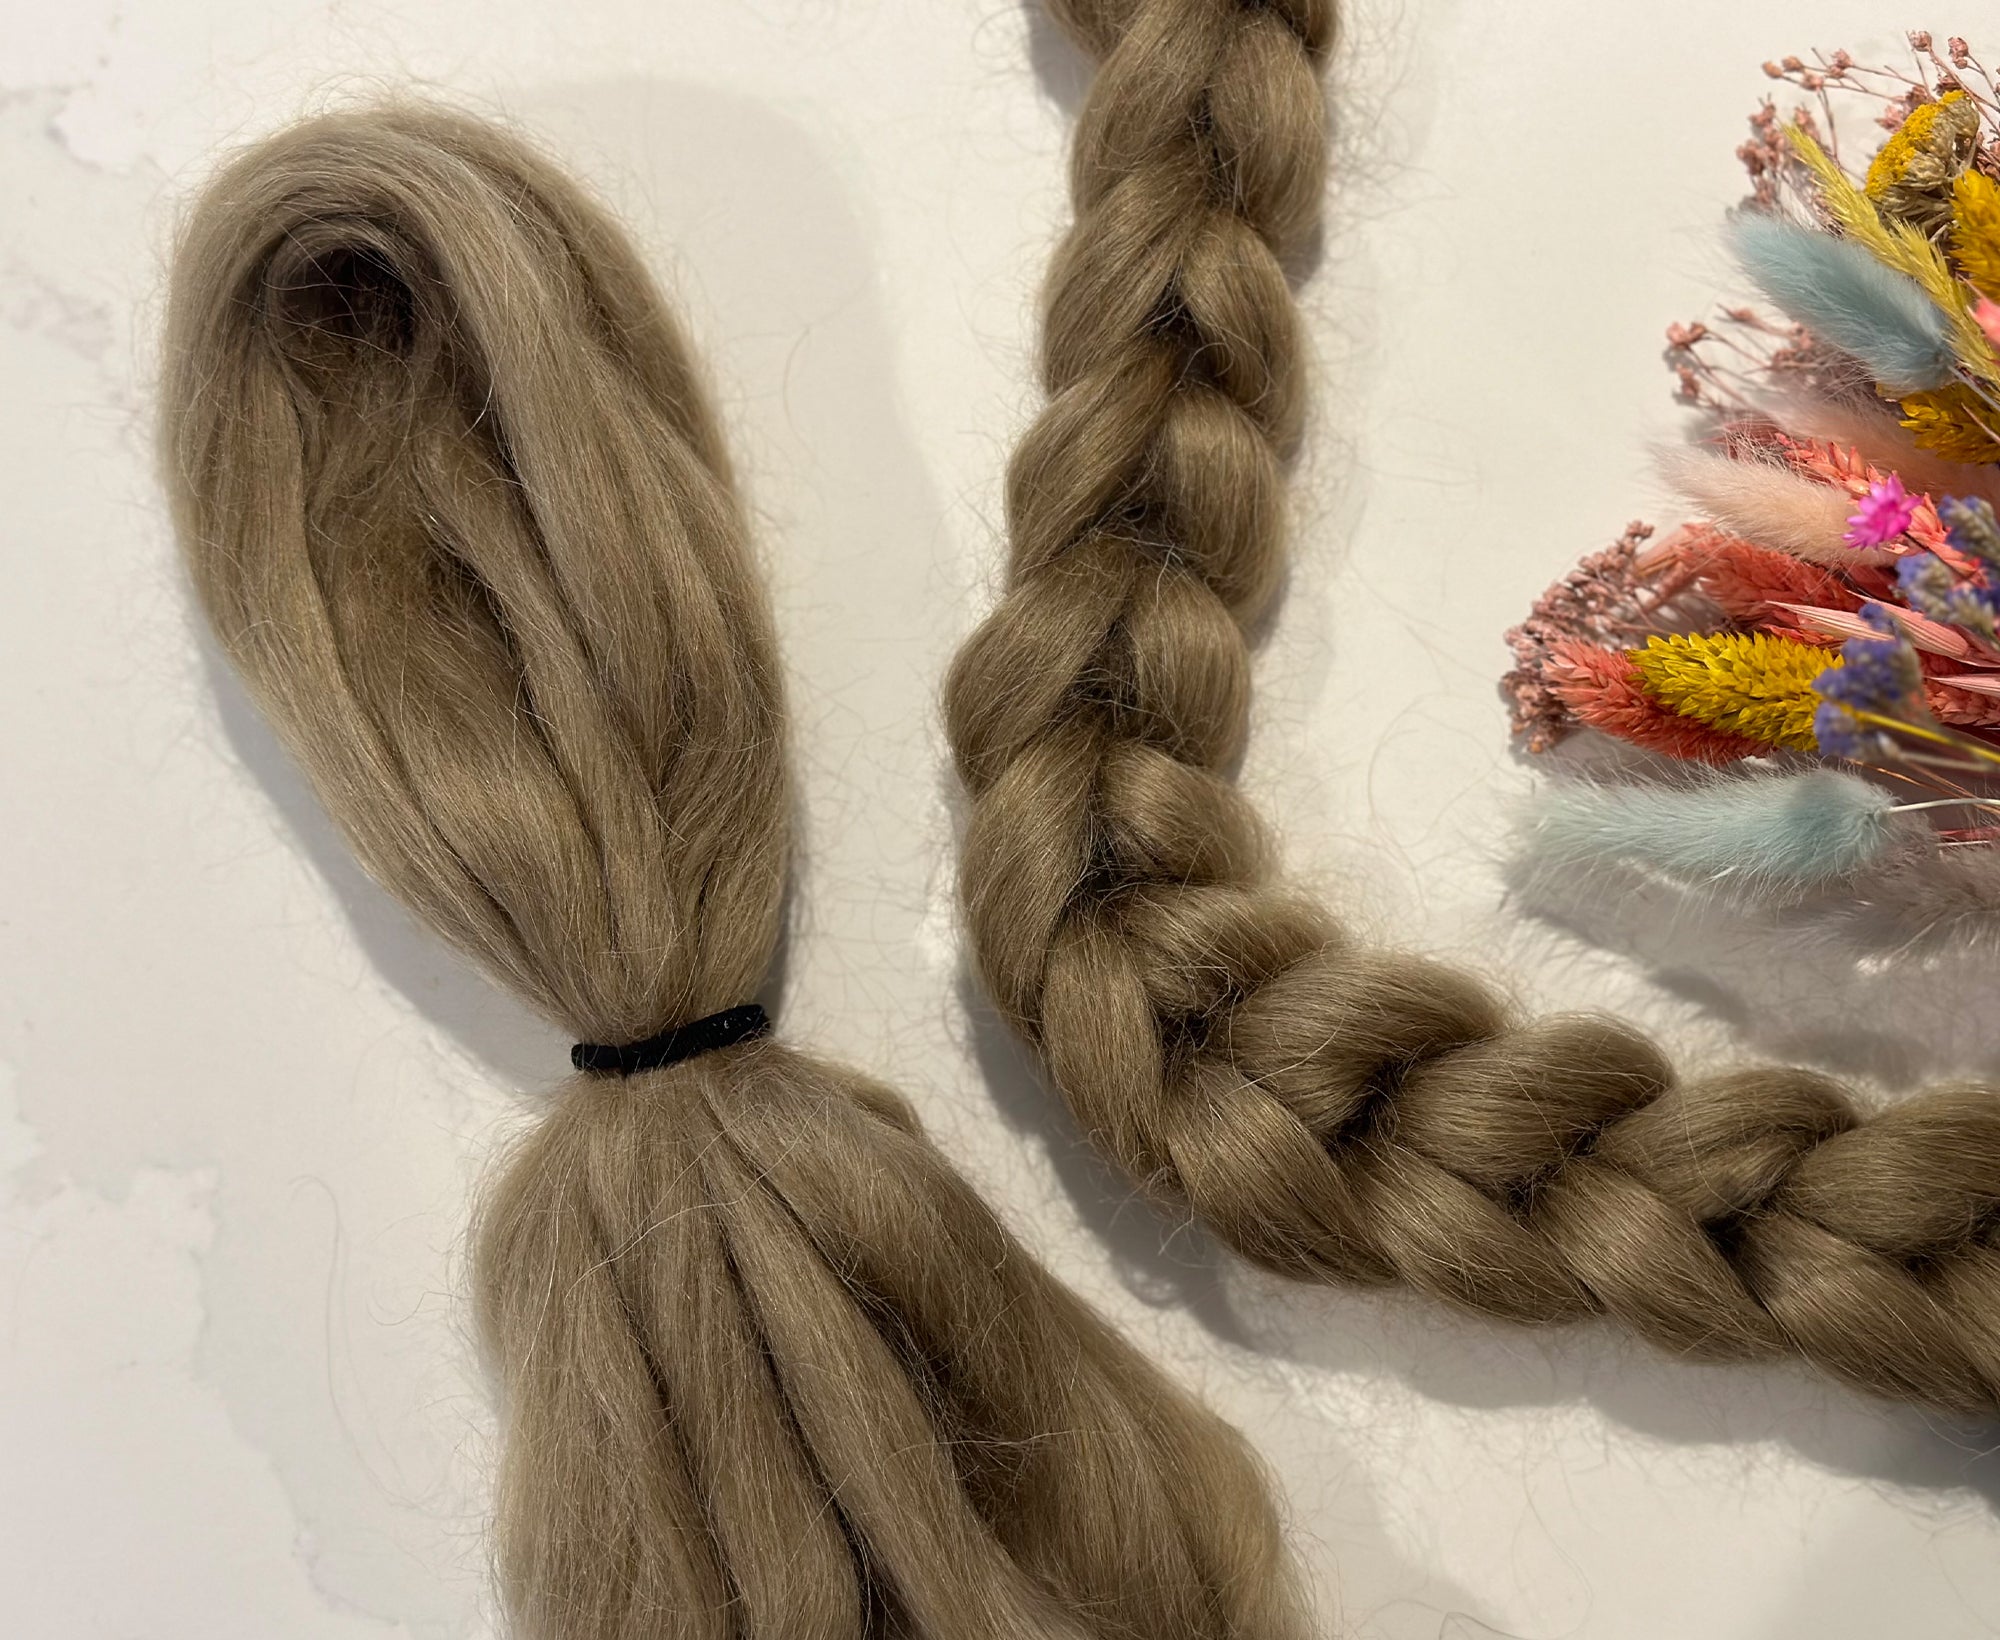 Wool and Silk Blend - Candy - Fibrecraft